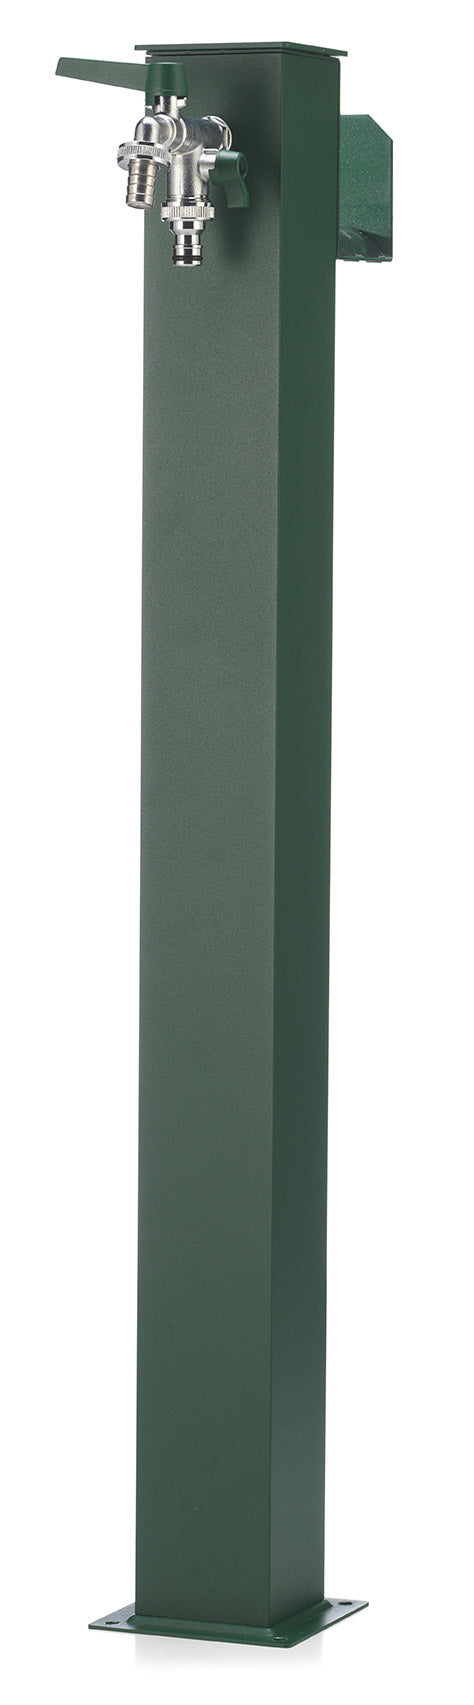 Fontana da Giardino con Doppio Rubinetto Belfer 42/QRR Verde acquista